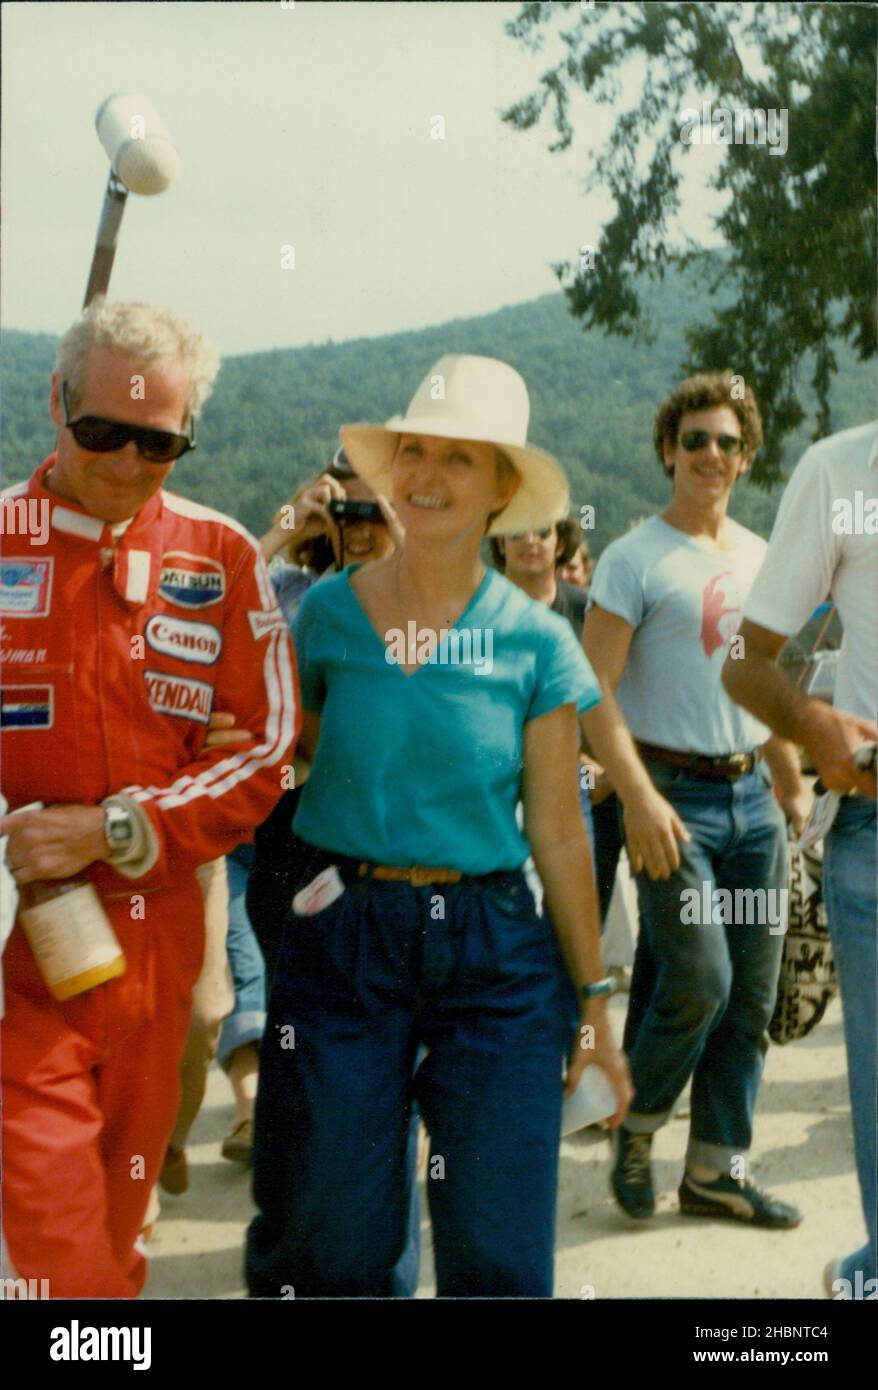 Lime Rock, CT, USA. um 1980. Der verstorbene Schauspieler Paul Newman spaziert mit seiner Frau Joanne Woodward während eines Autorennens auf dem Limerock Speedway. Kredit: Jim DeLillo/Alamy Stockfoto